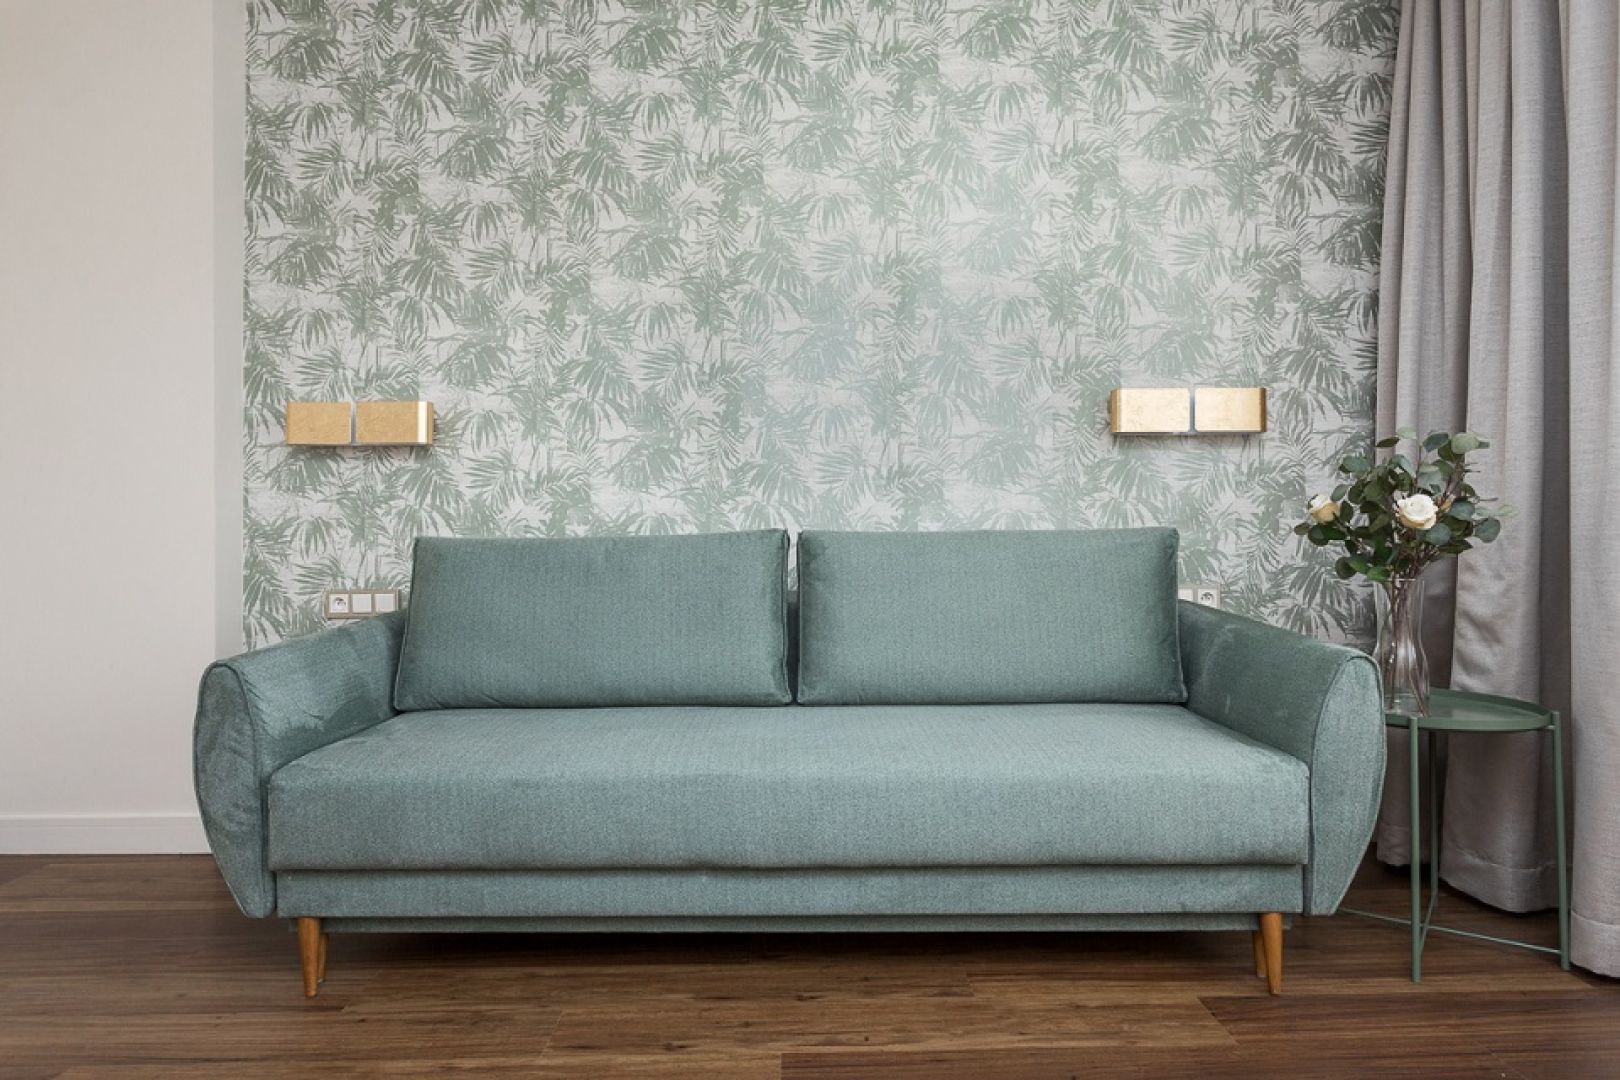 Nowoczesna, szara sofa - najważniejszy mebel w salonie. Projekt: Clou Design. Fot. Clou Design